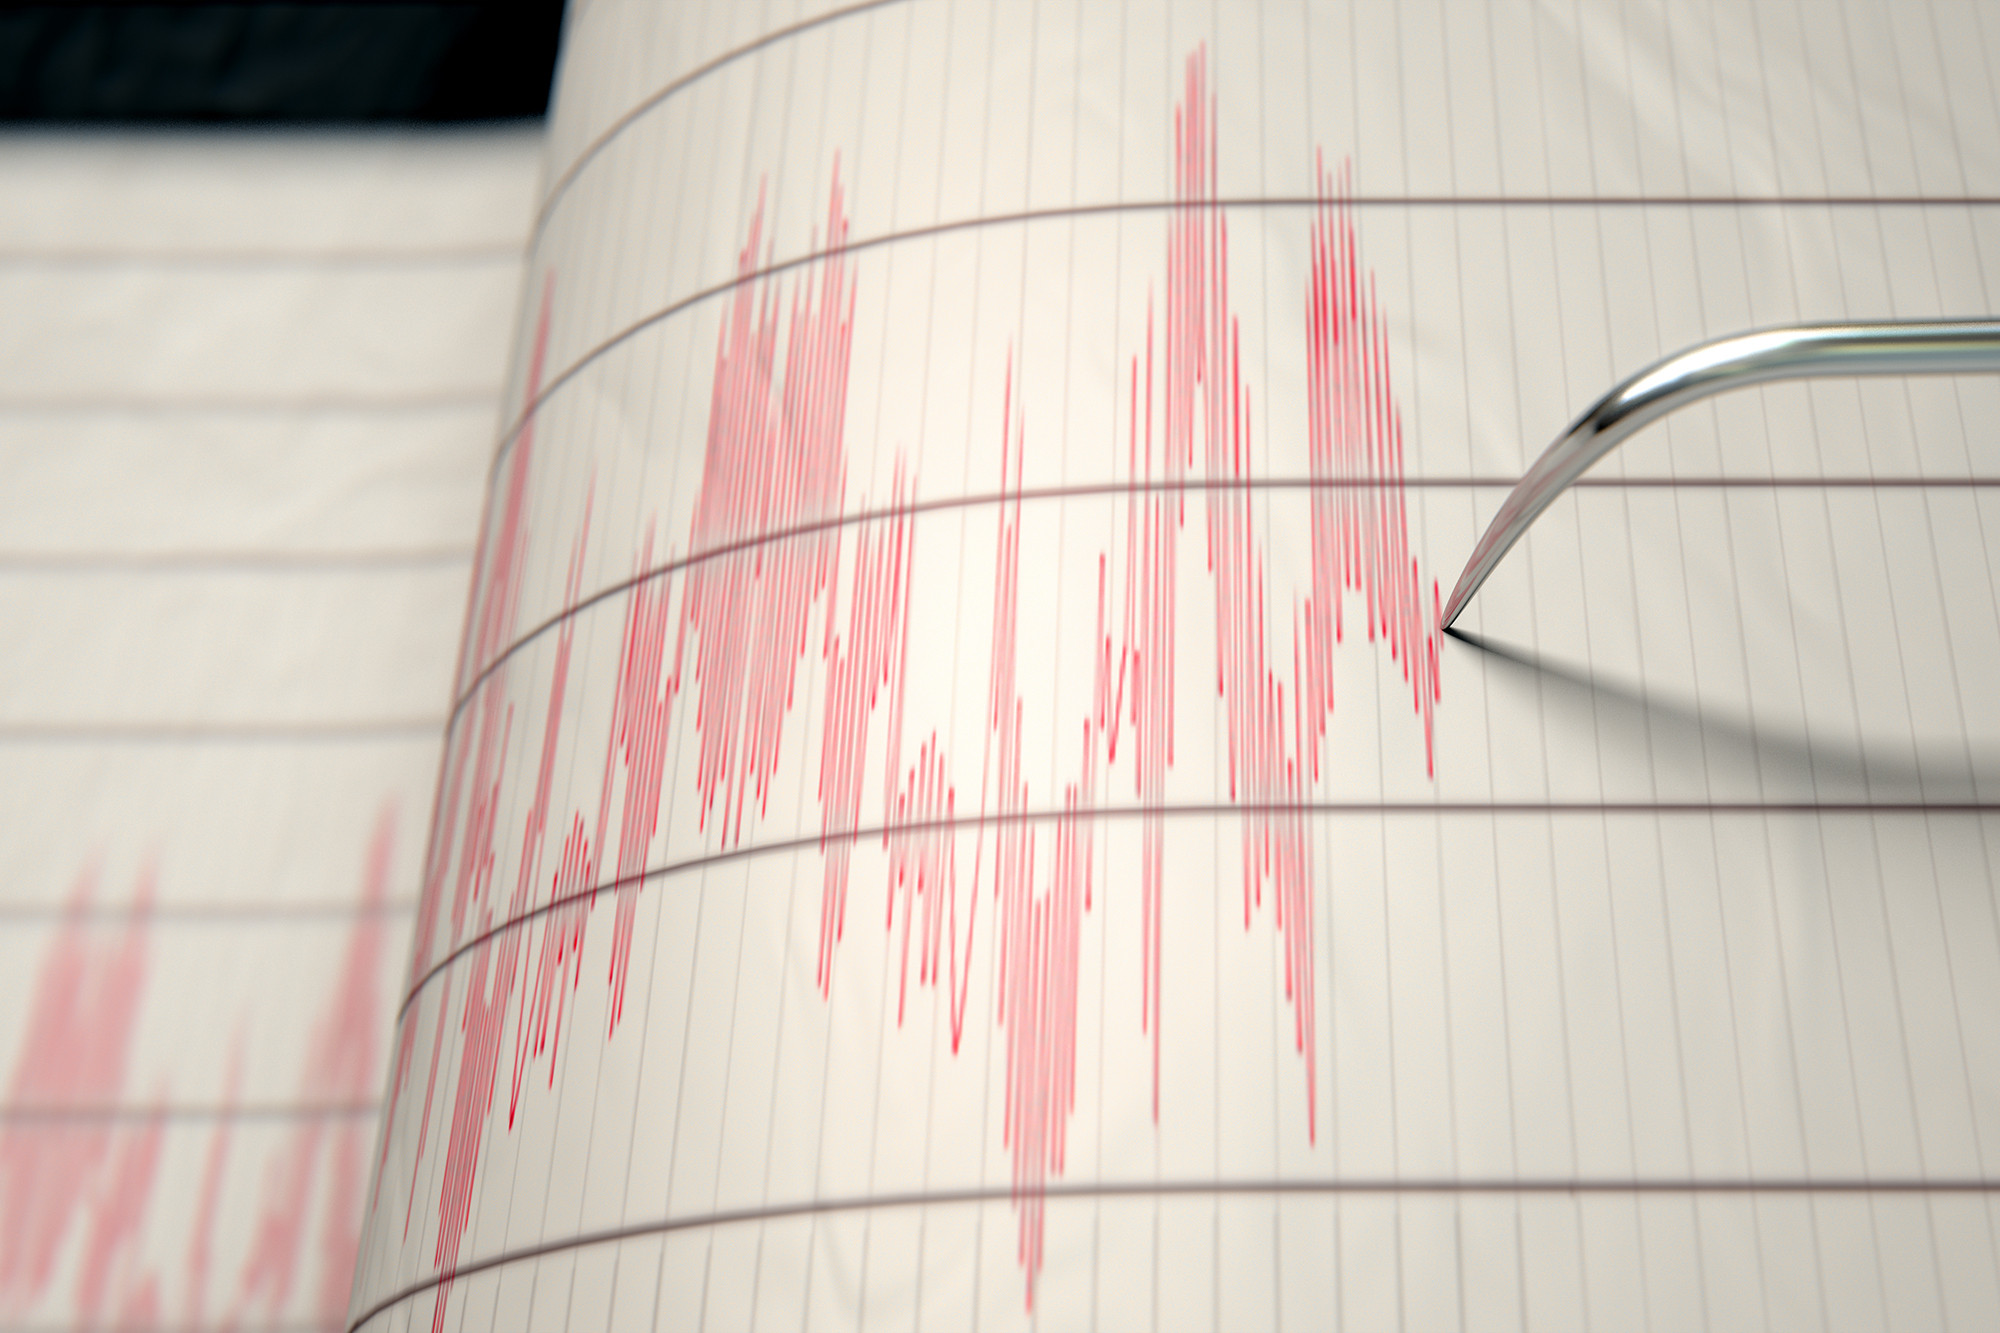 Земетресение с магнитуд 5,1 е регистрирано в град Коня, Централна